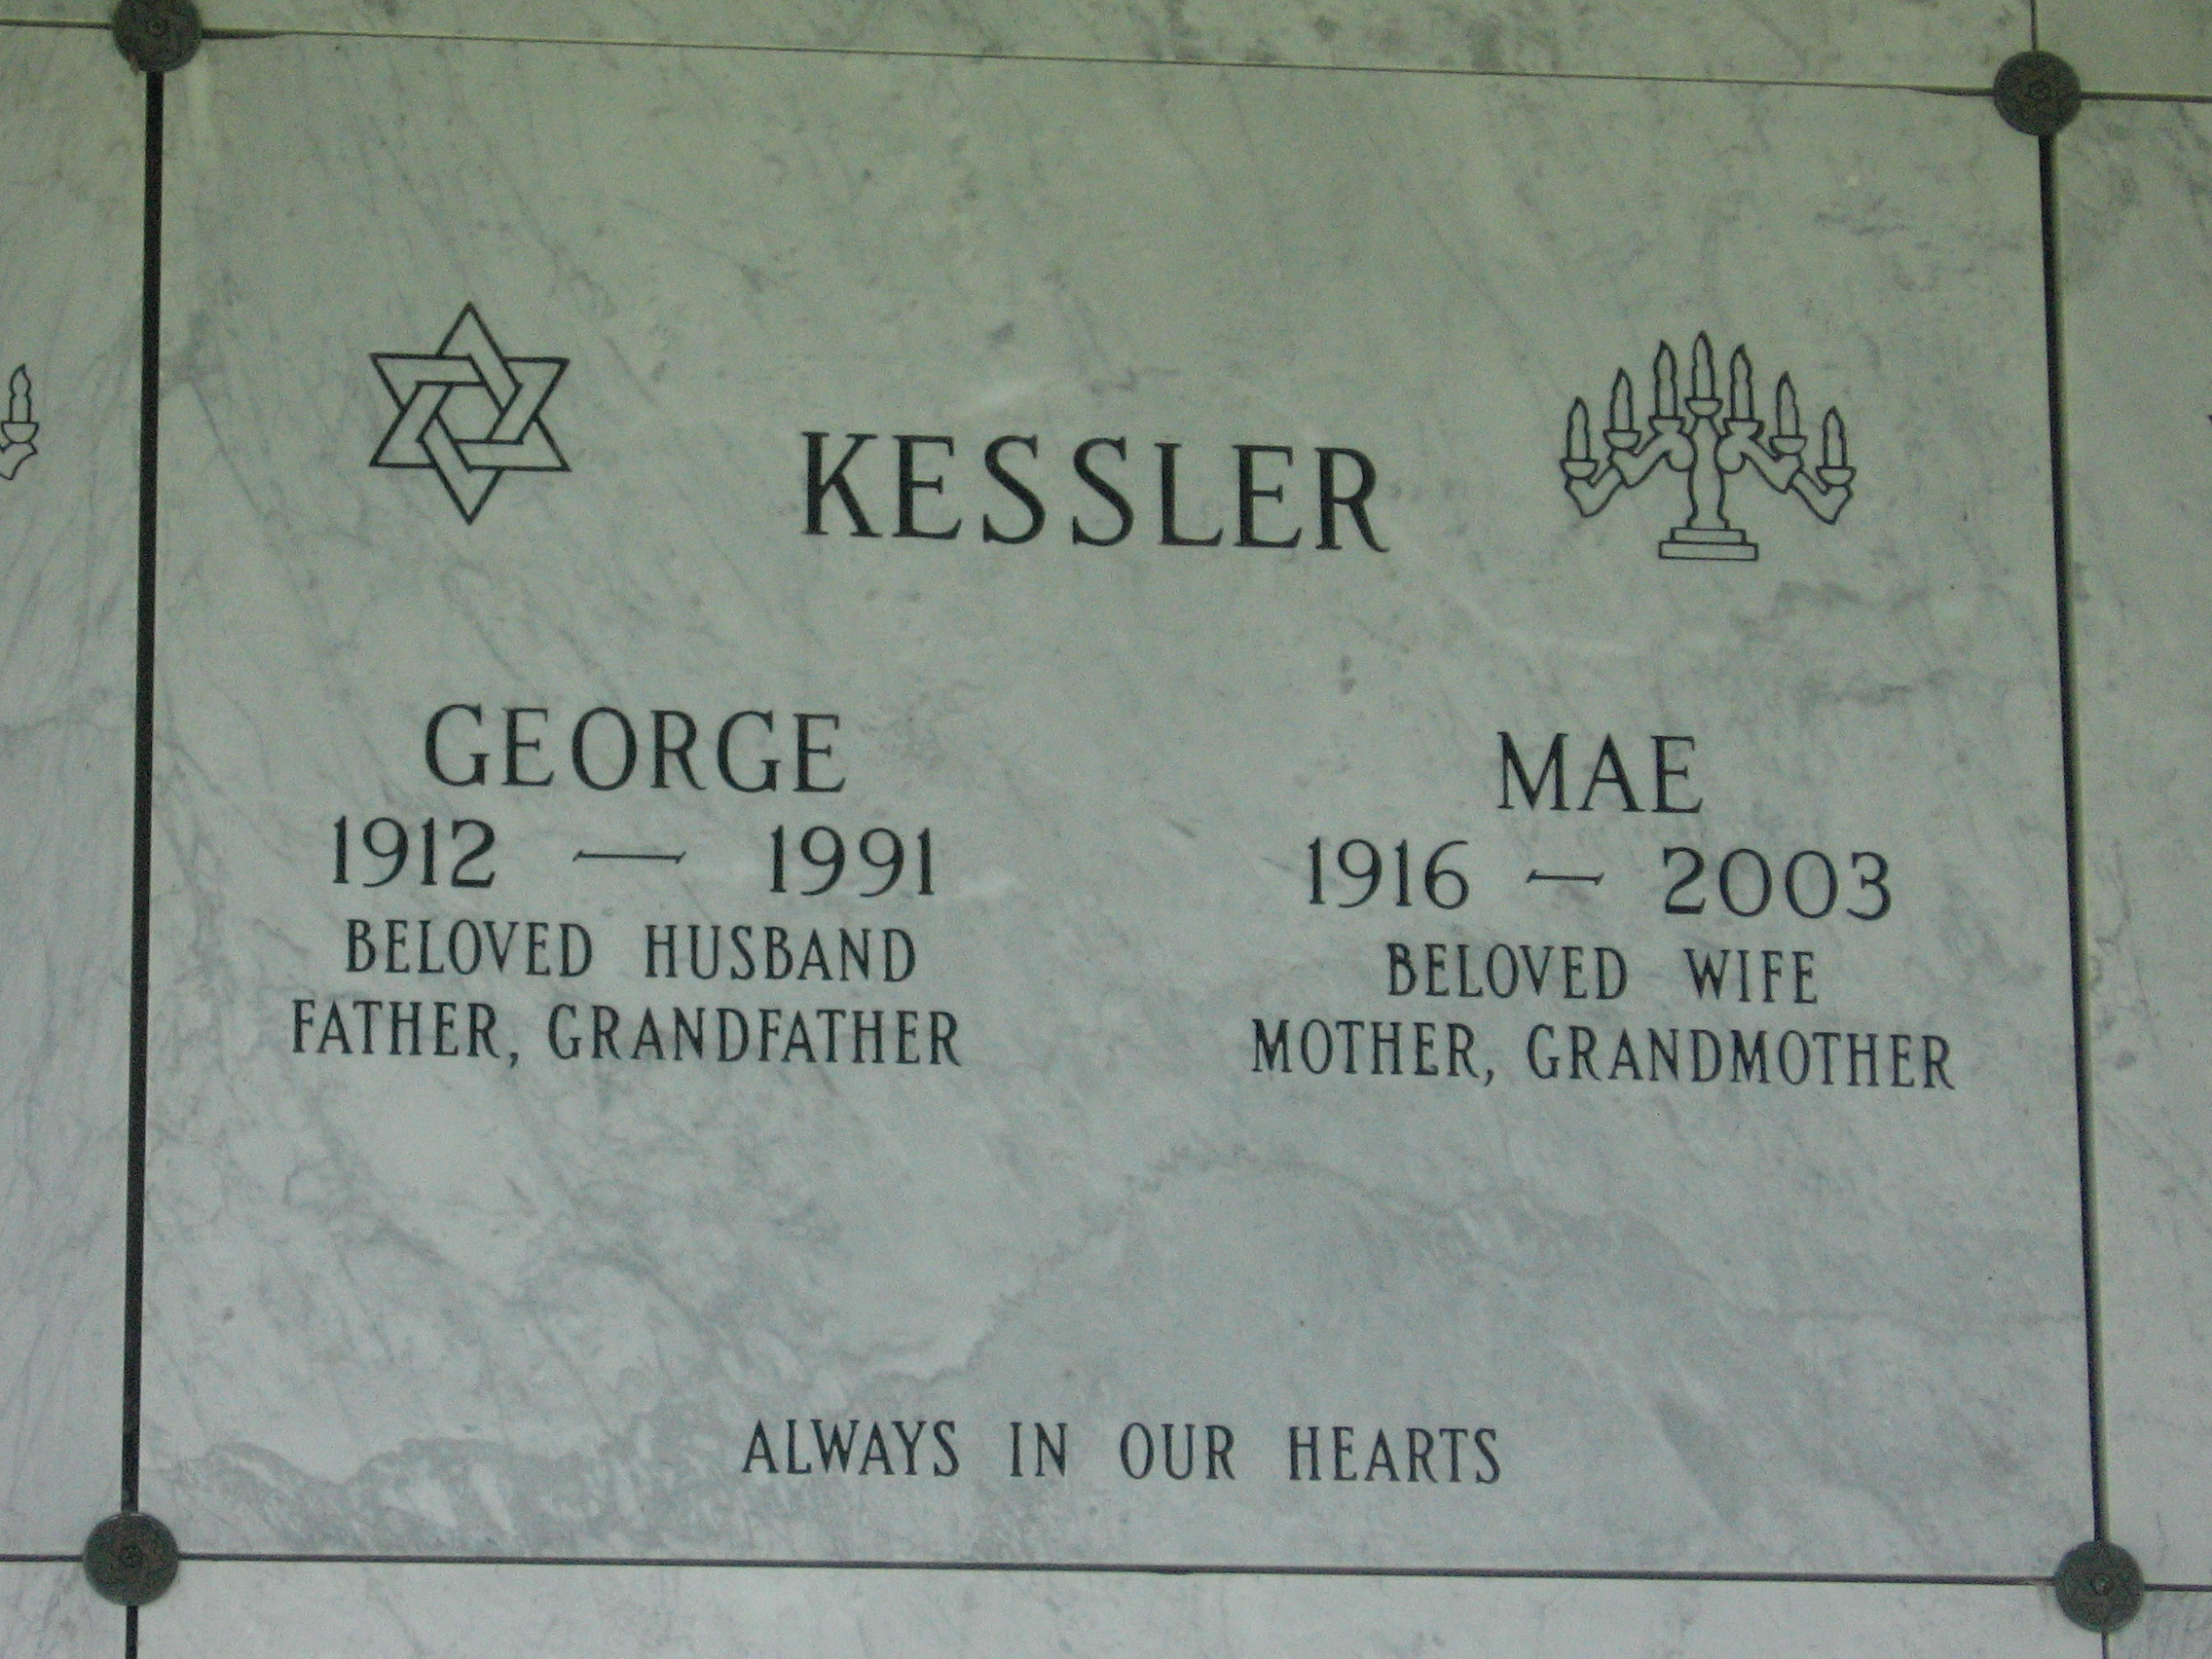 George Kessler